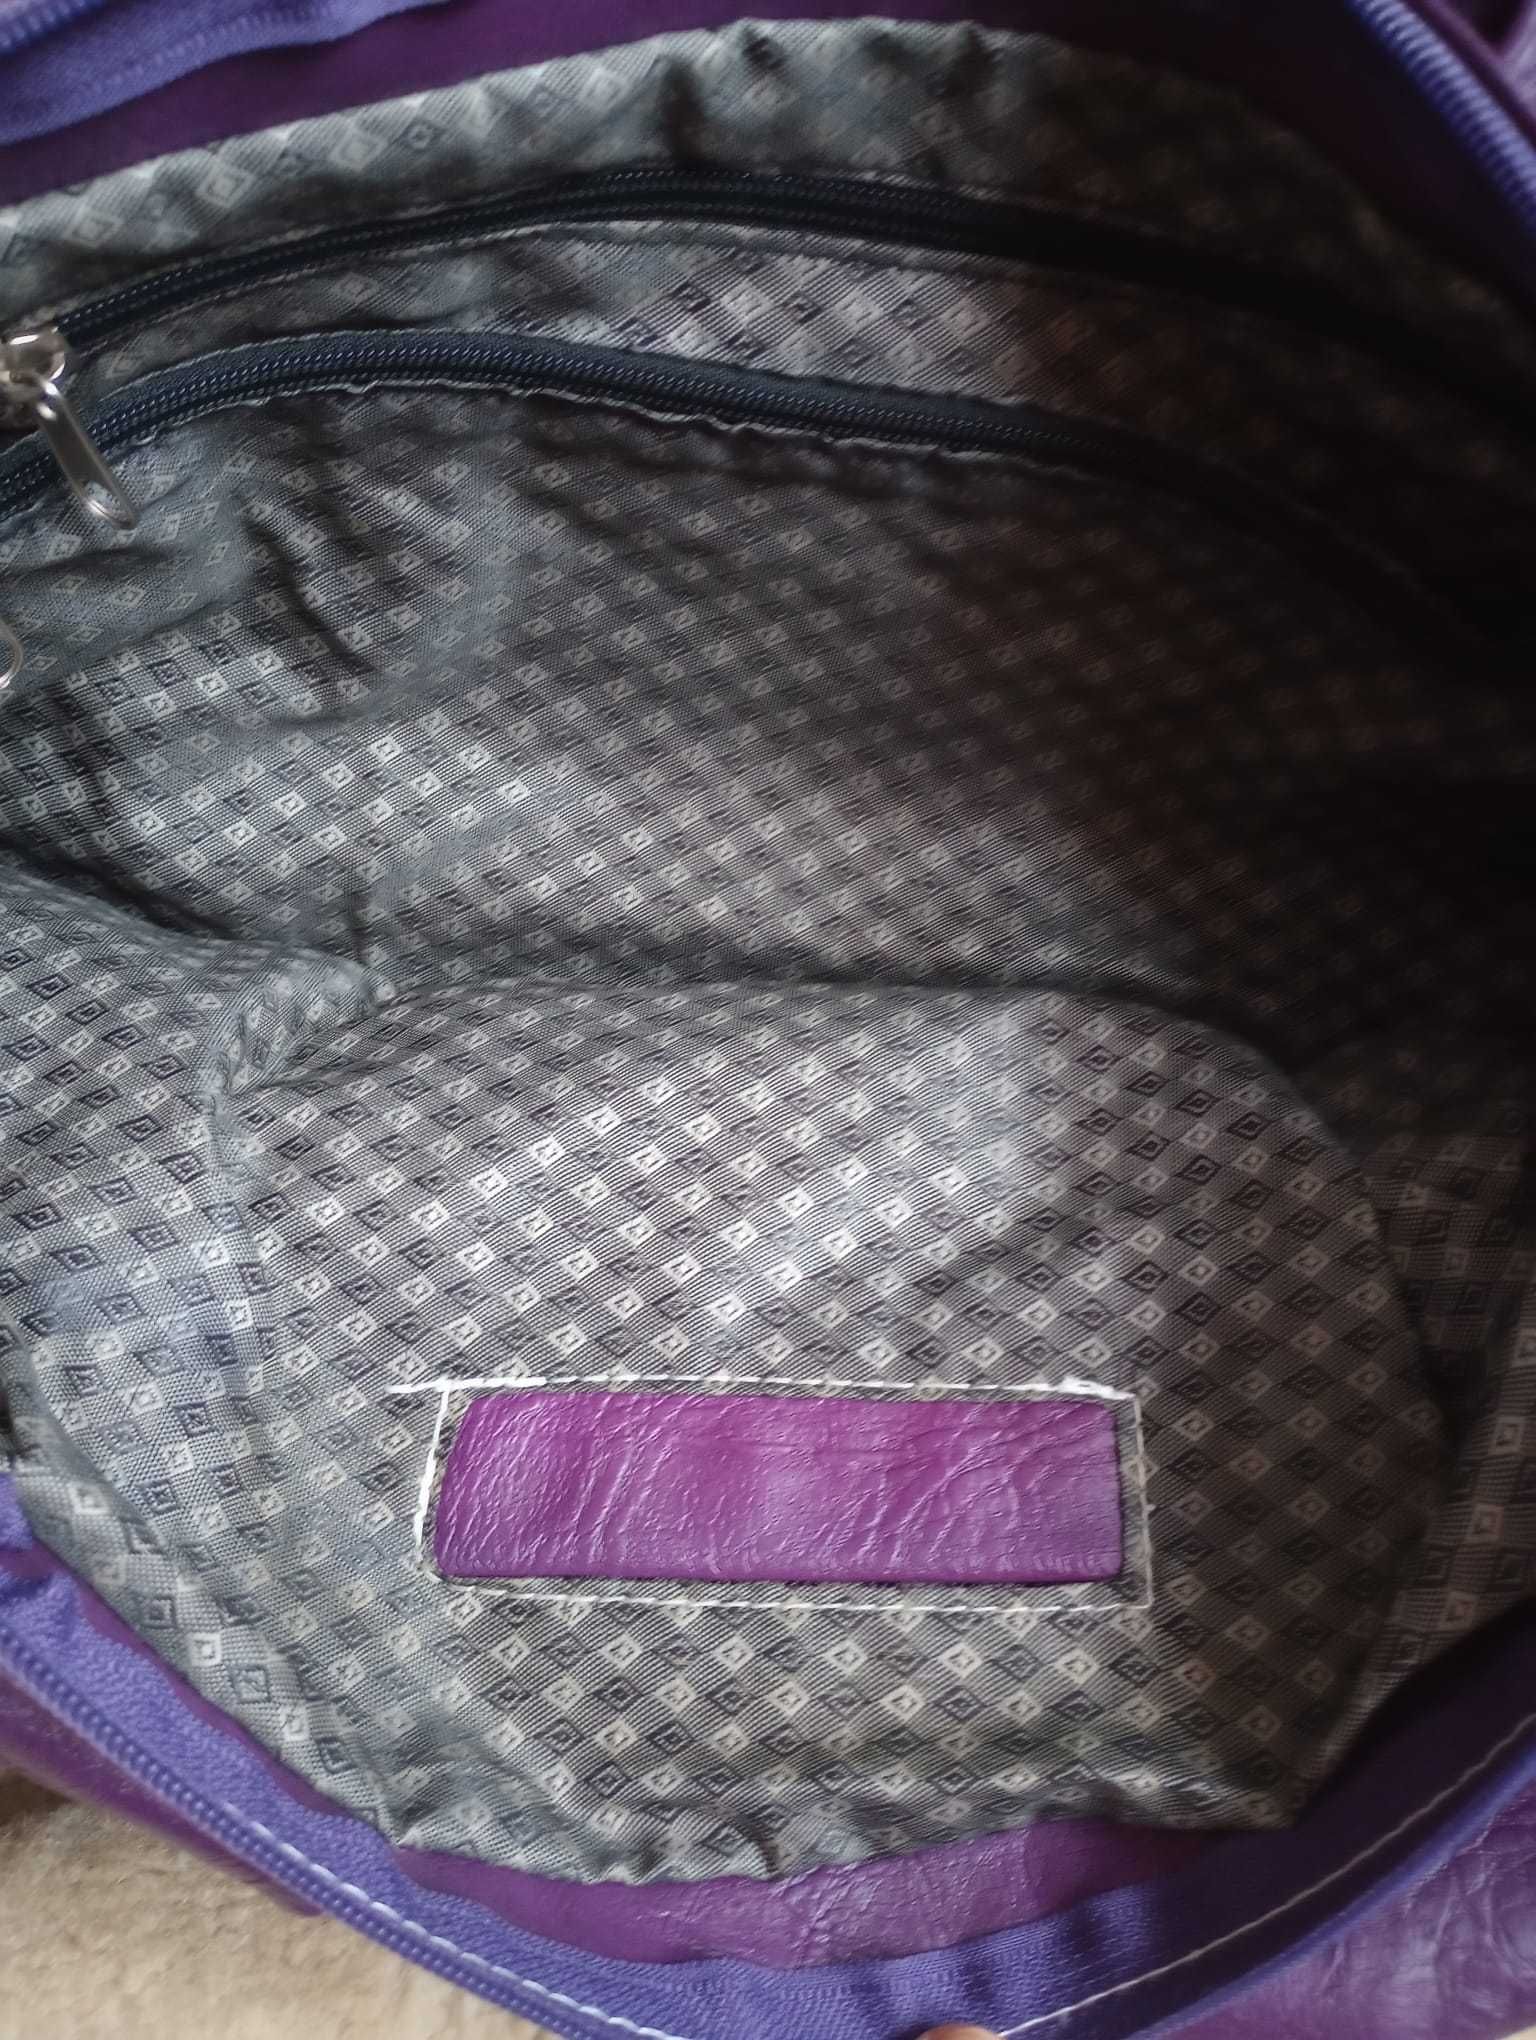 Sprzedam torebkę damską w kolorze śliwkowym z logo GG